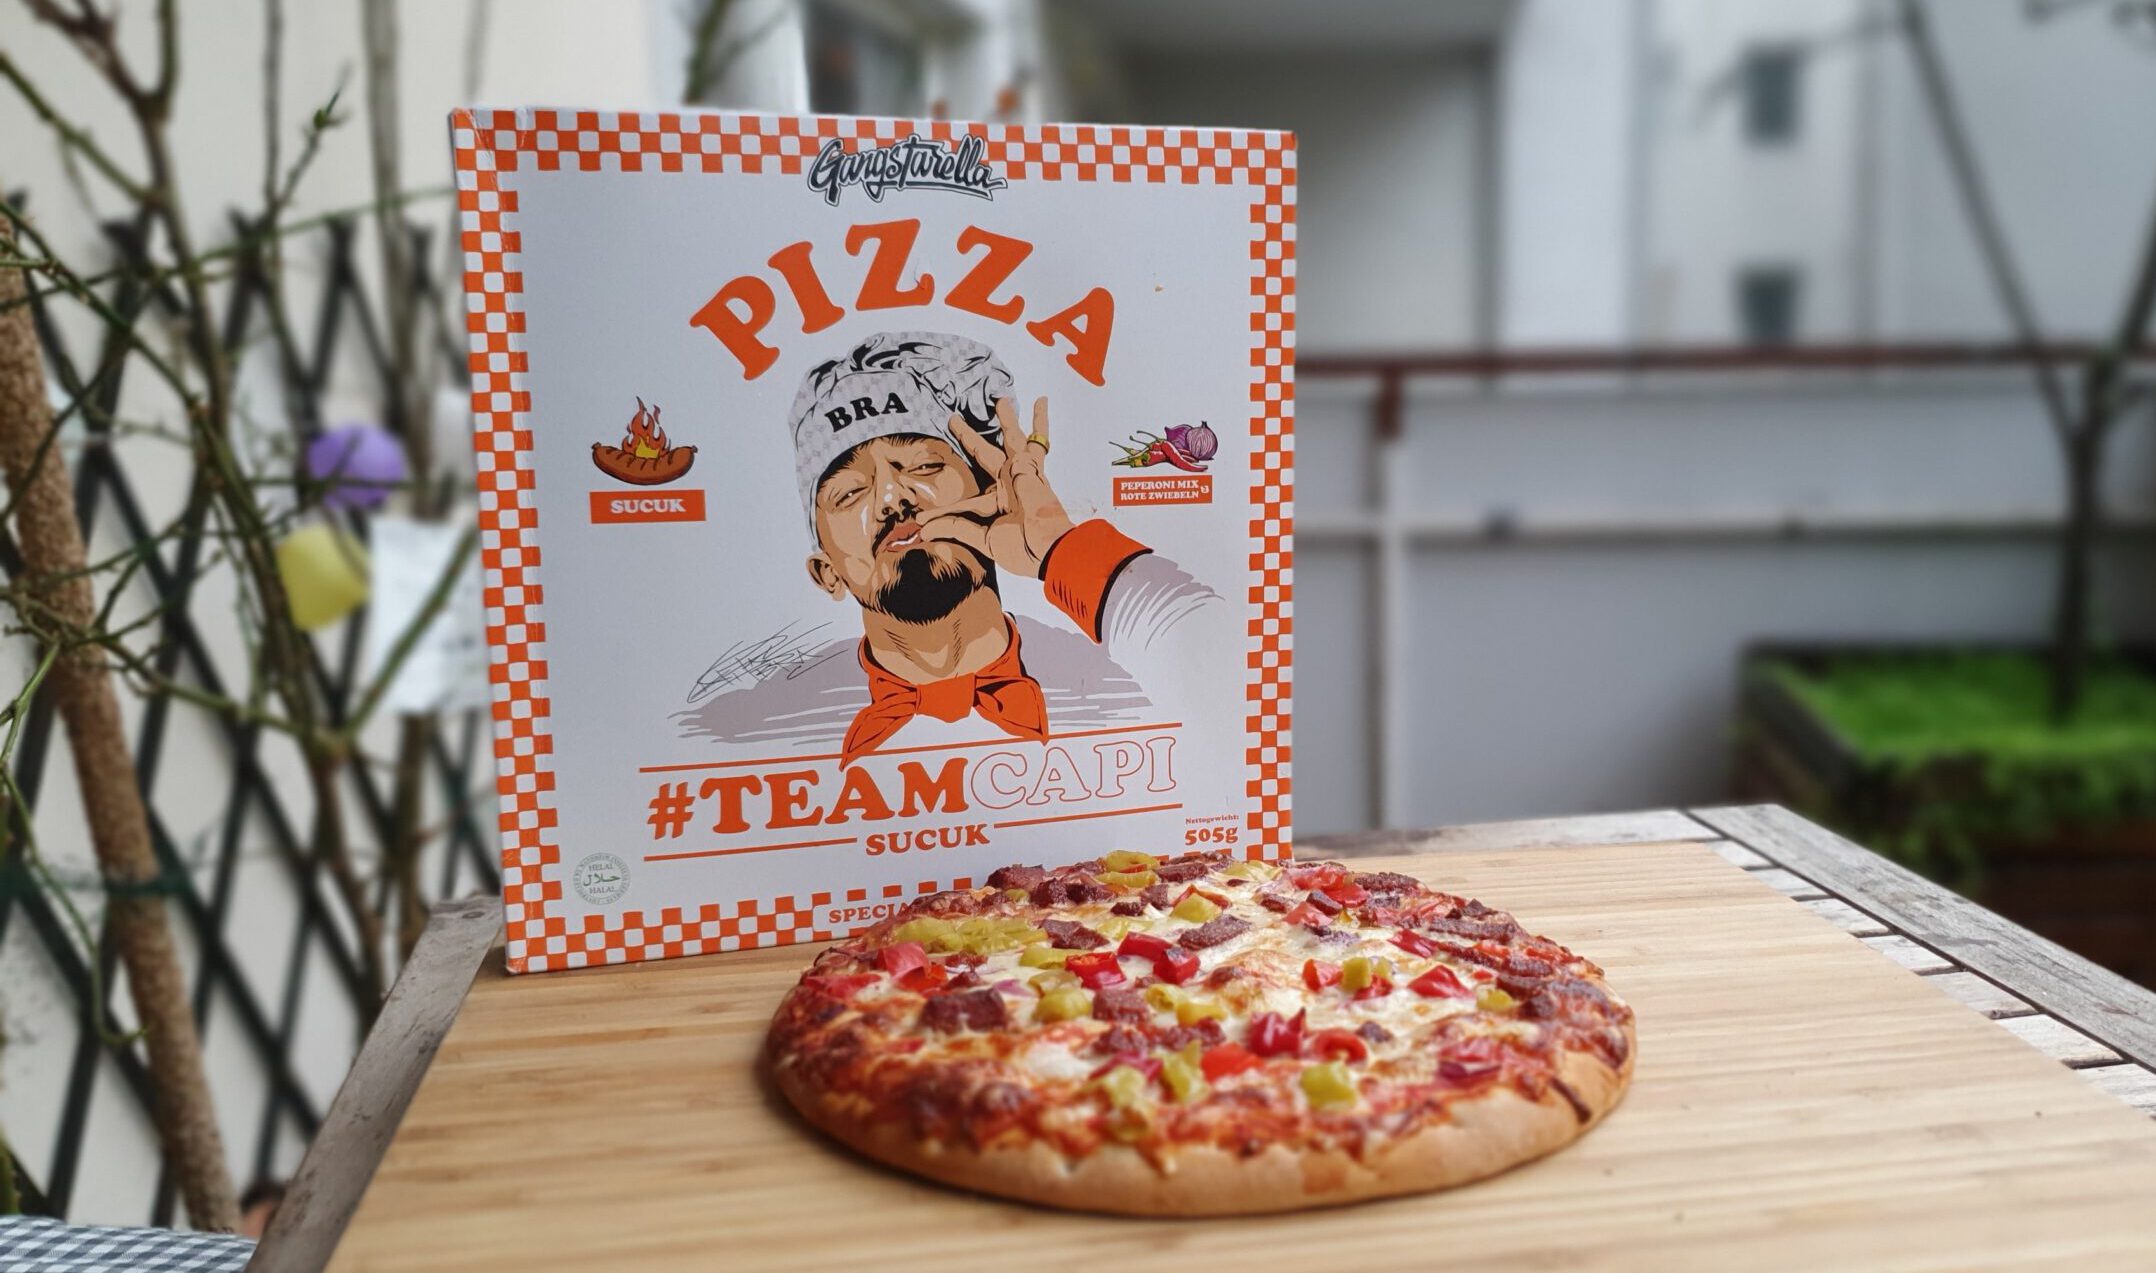 Capital Bra Pizza Sucuk Review - Wie schmeckt sie?